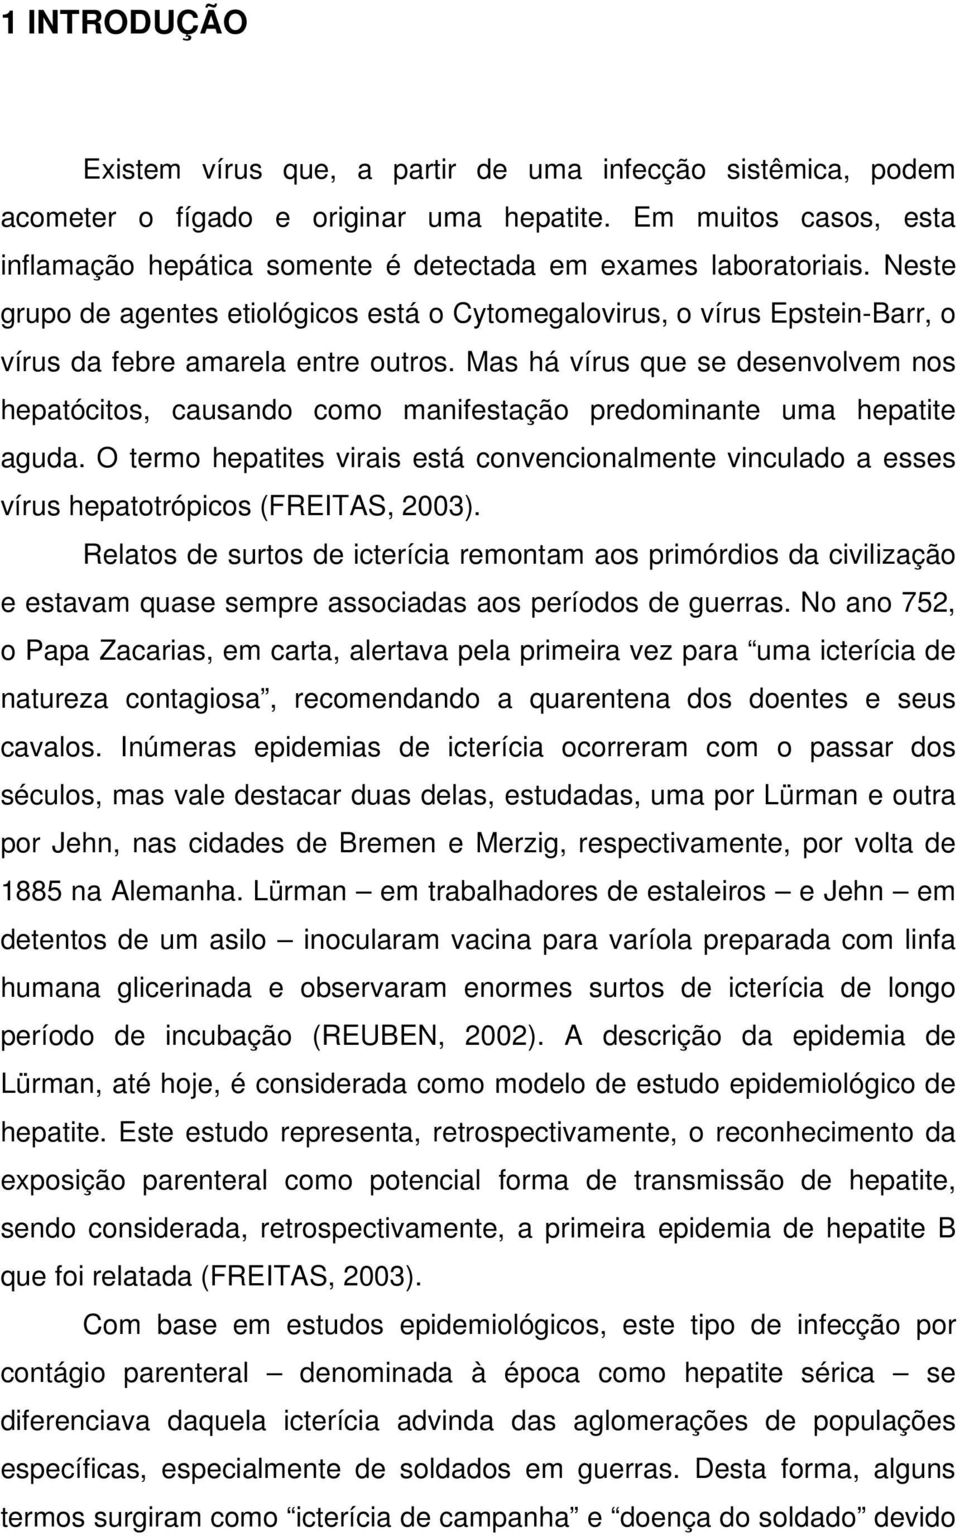 Neste grupo de agentes etiológicos está o Cytomegalovirus, o vírus Epstein-Barr, o vírus da febre amarela entre outros.